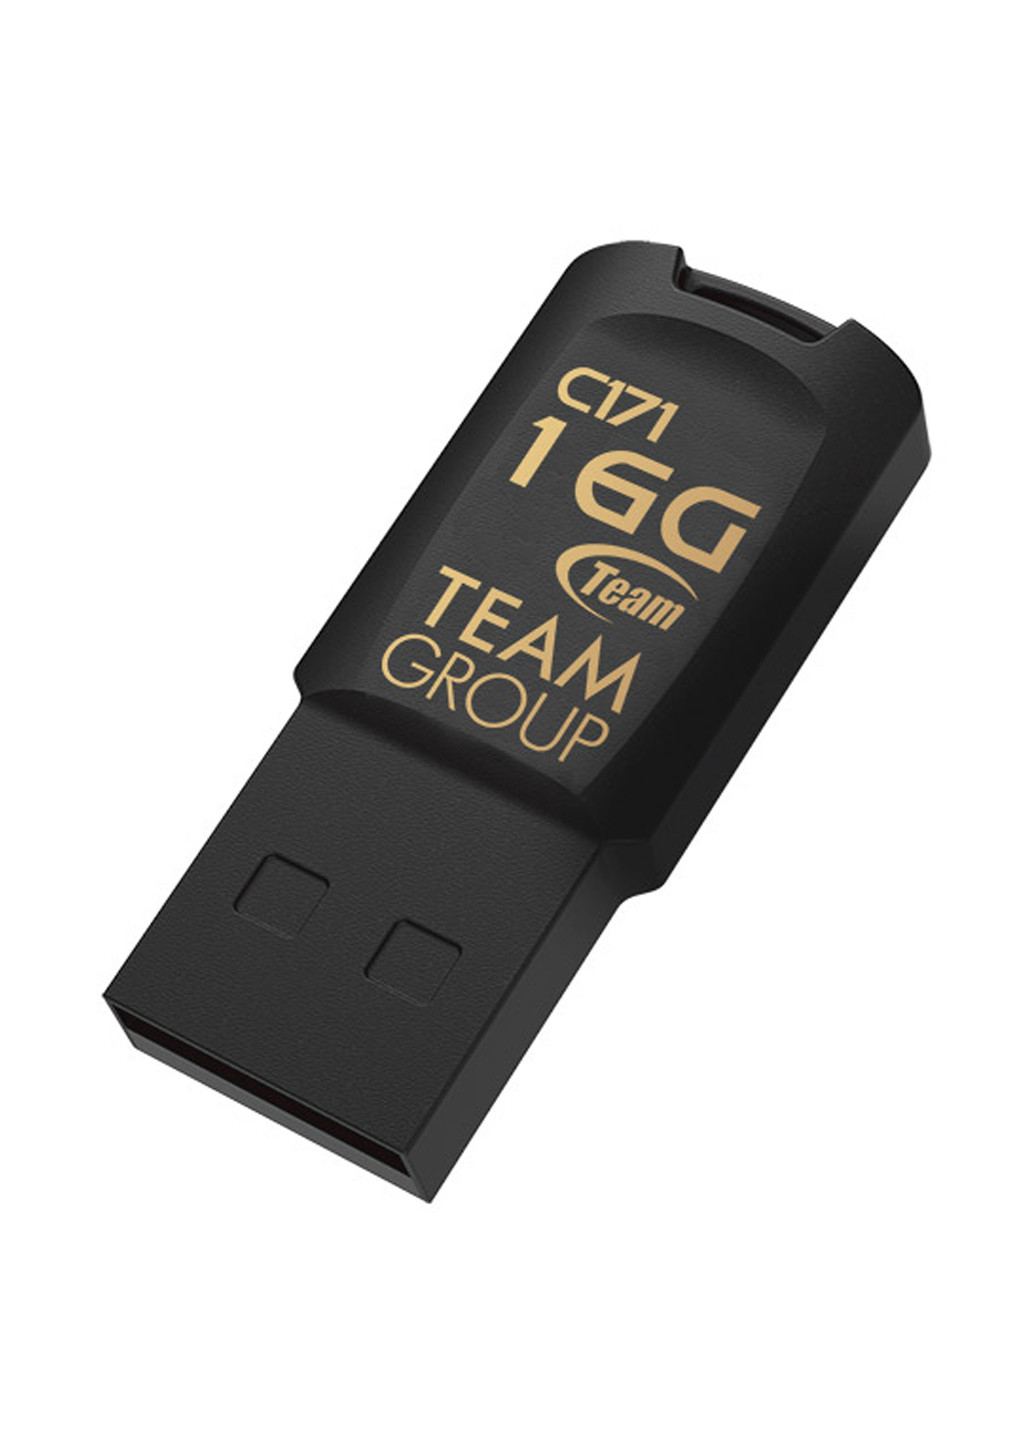 Флеш пам'ять USB C171 16GB Black (TC17116GB01) Team флеш память usb team c171 16gb black (tc17116gb01) (134201710)